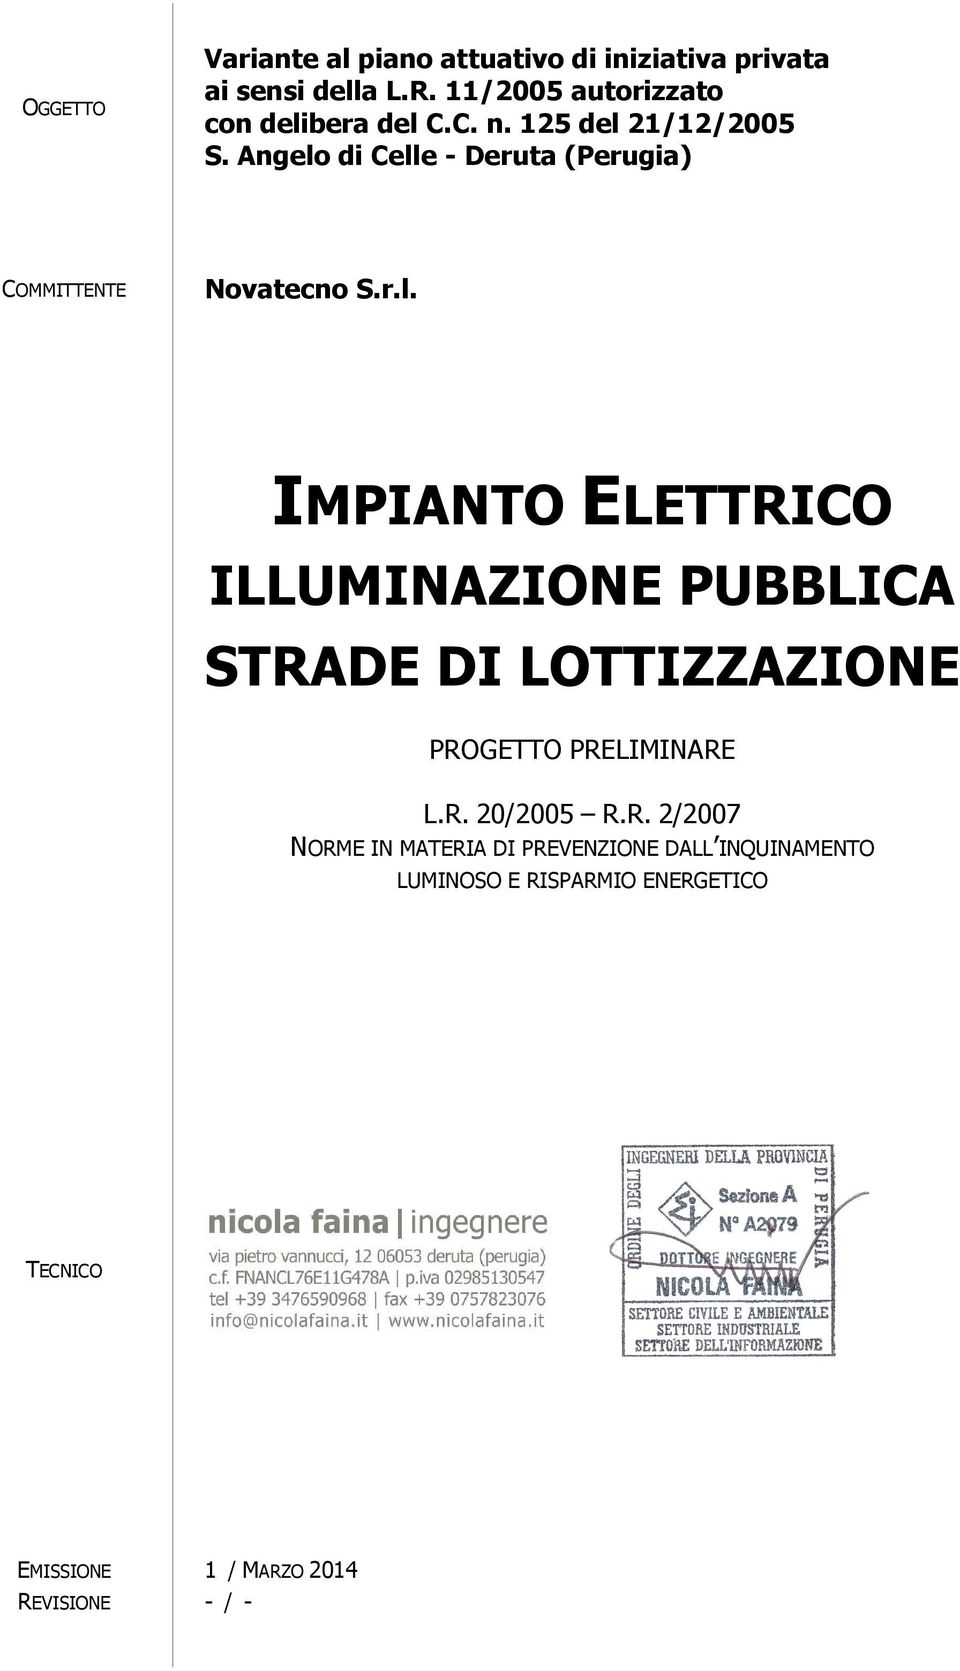 Angelo di Celle - Deruta (Perugia) COMMITTENTE Novatecno S.r.l. IMPIANTO ELETTRICO ILLUMINAZIONE PUBBLICA STRADE DI LOTTIZZAZIONE PROGETTO PRELIMINARE L.